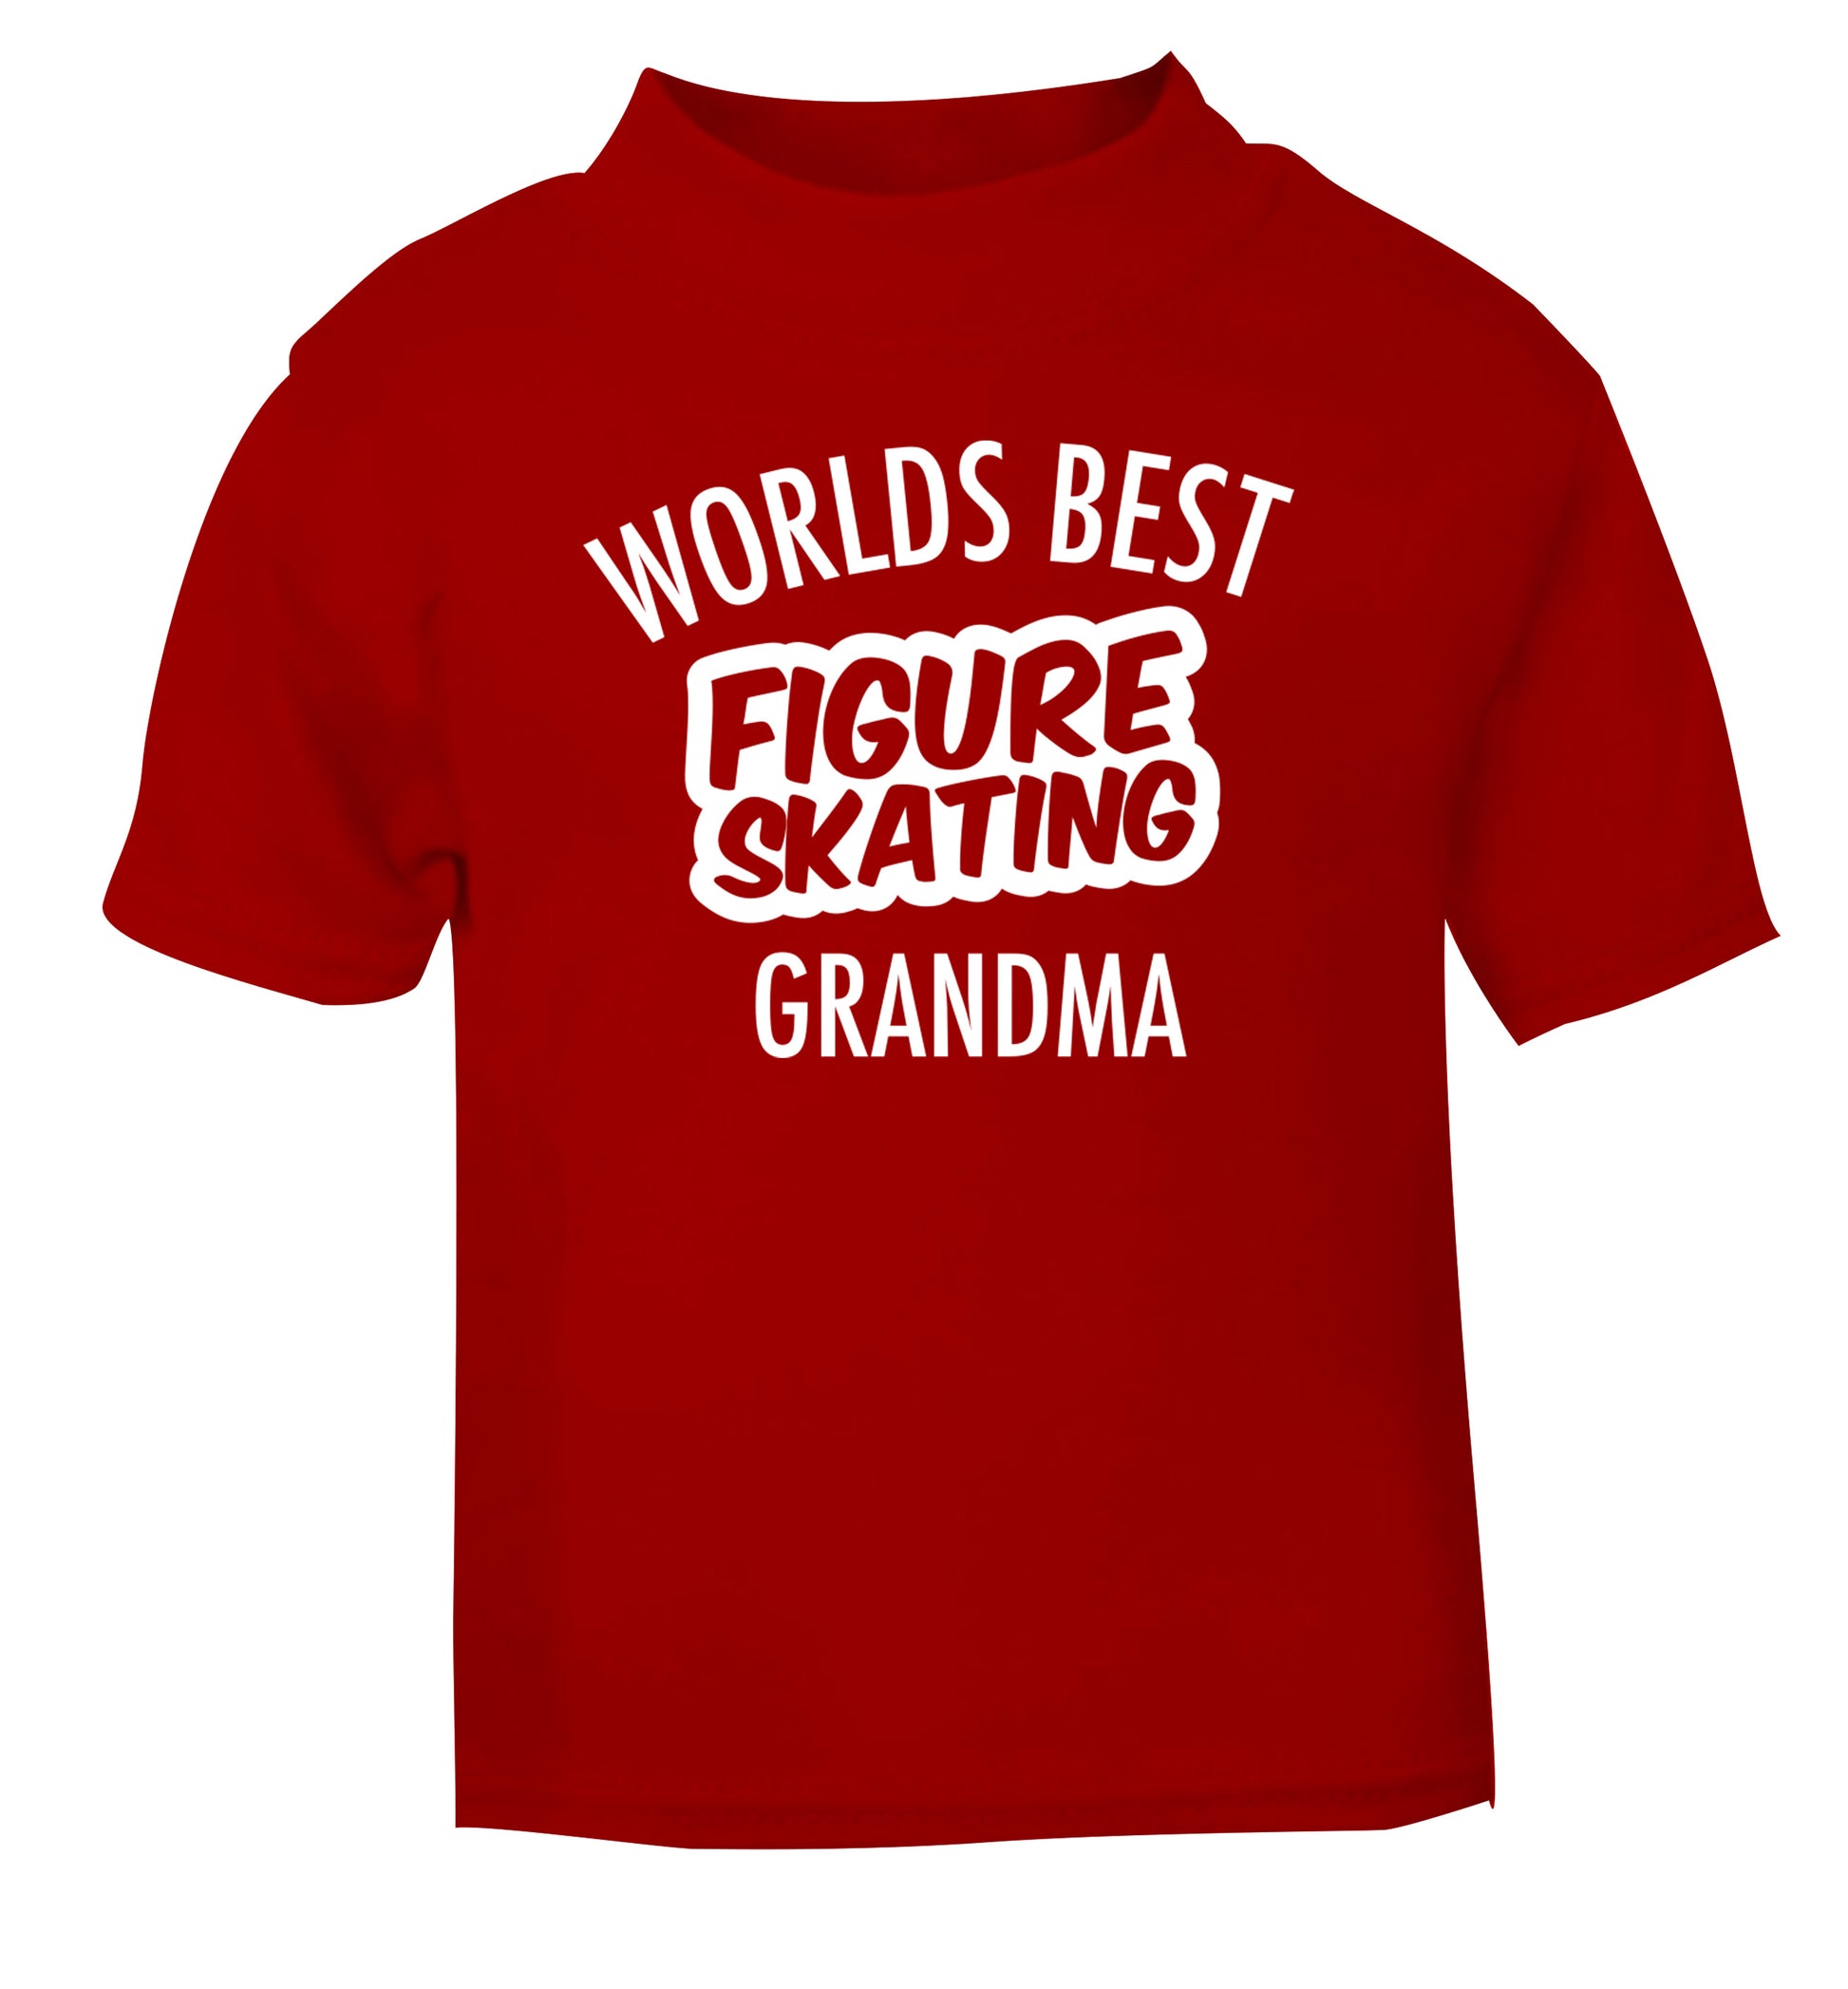 Worlds best figure skating grandma red Baby Toddler Tshirt 2 Years